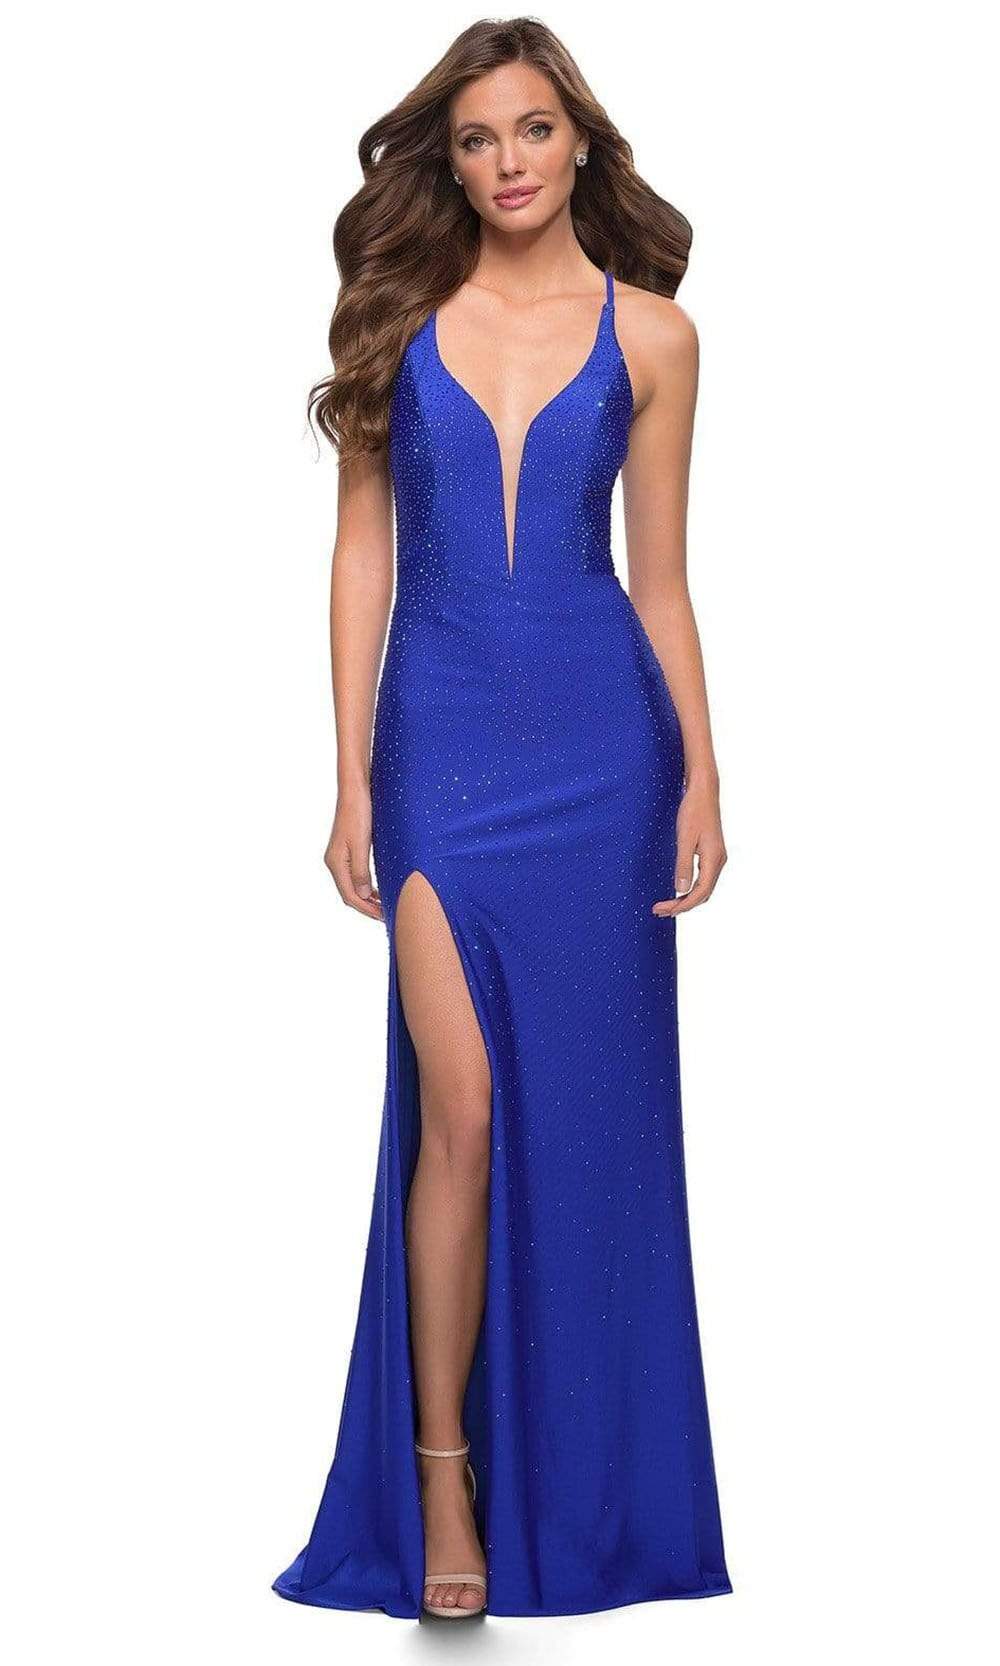 La Femme - 29958 Low V Neck Beaded Slit Dress Prom Dresses 00 / Royal Blue